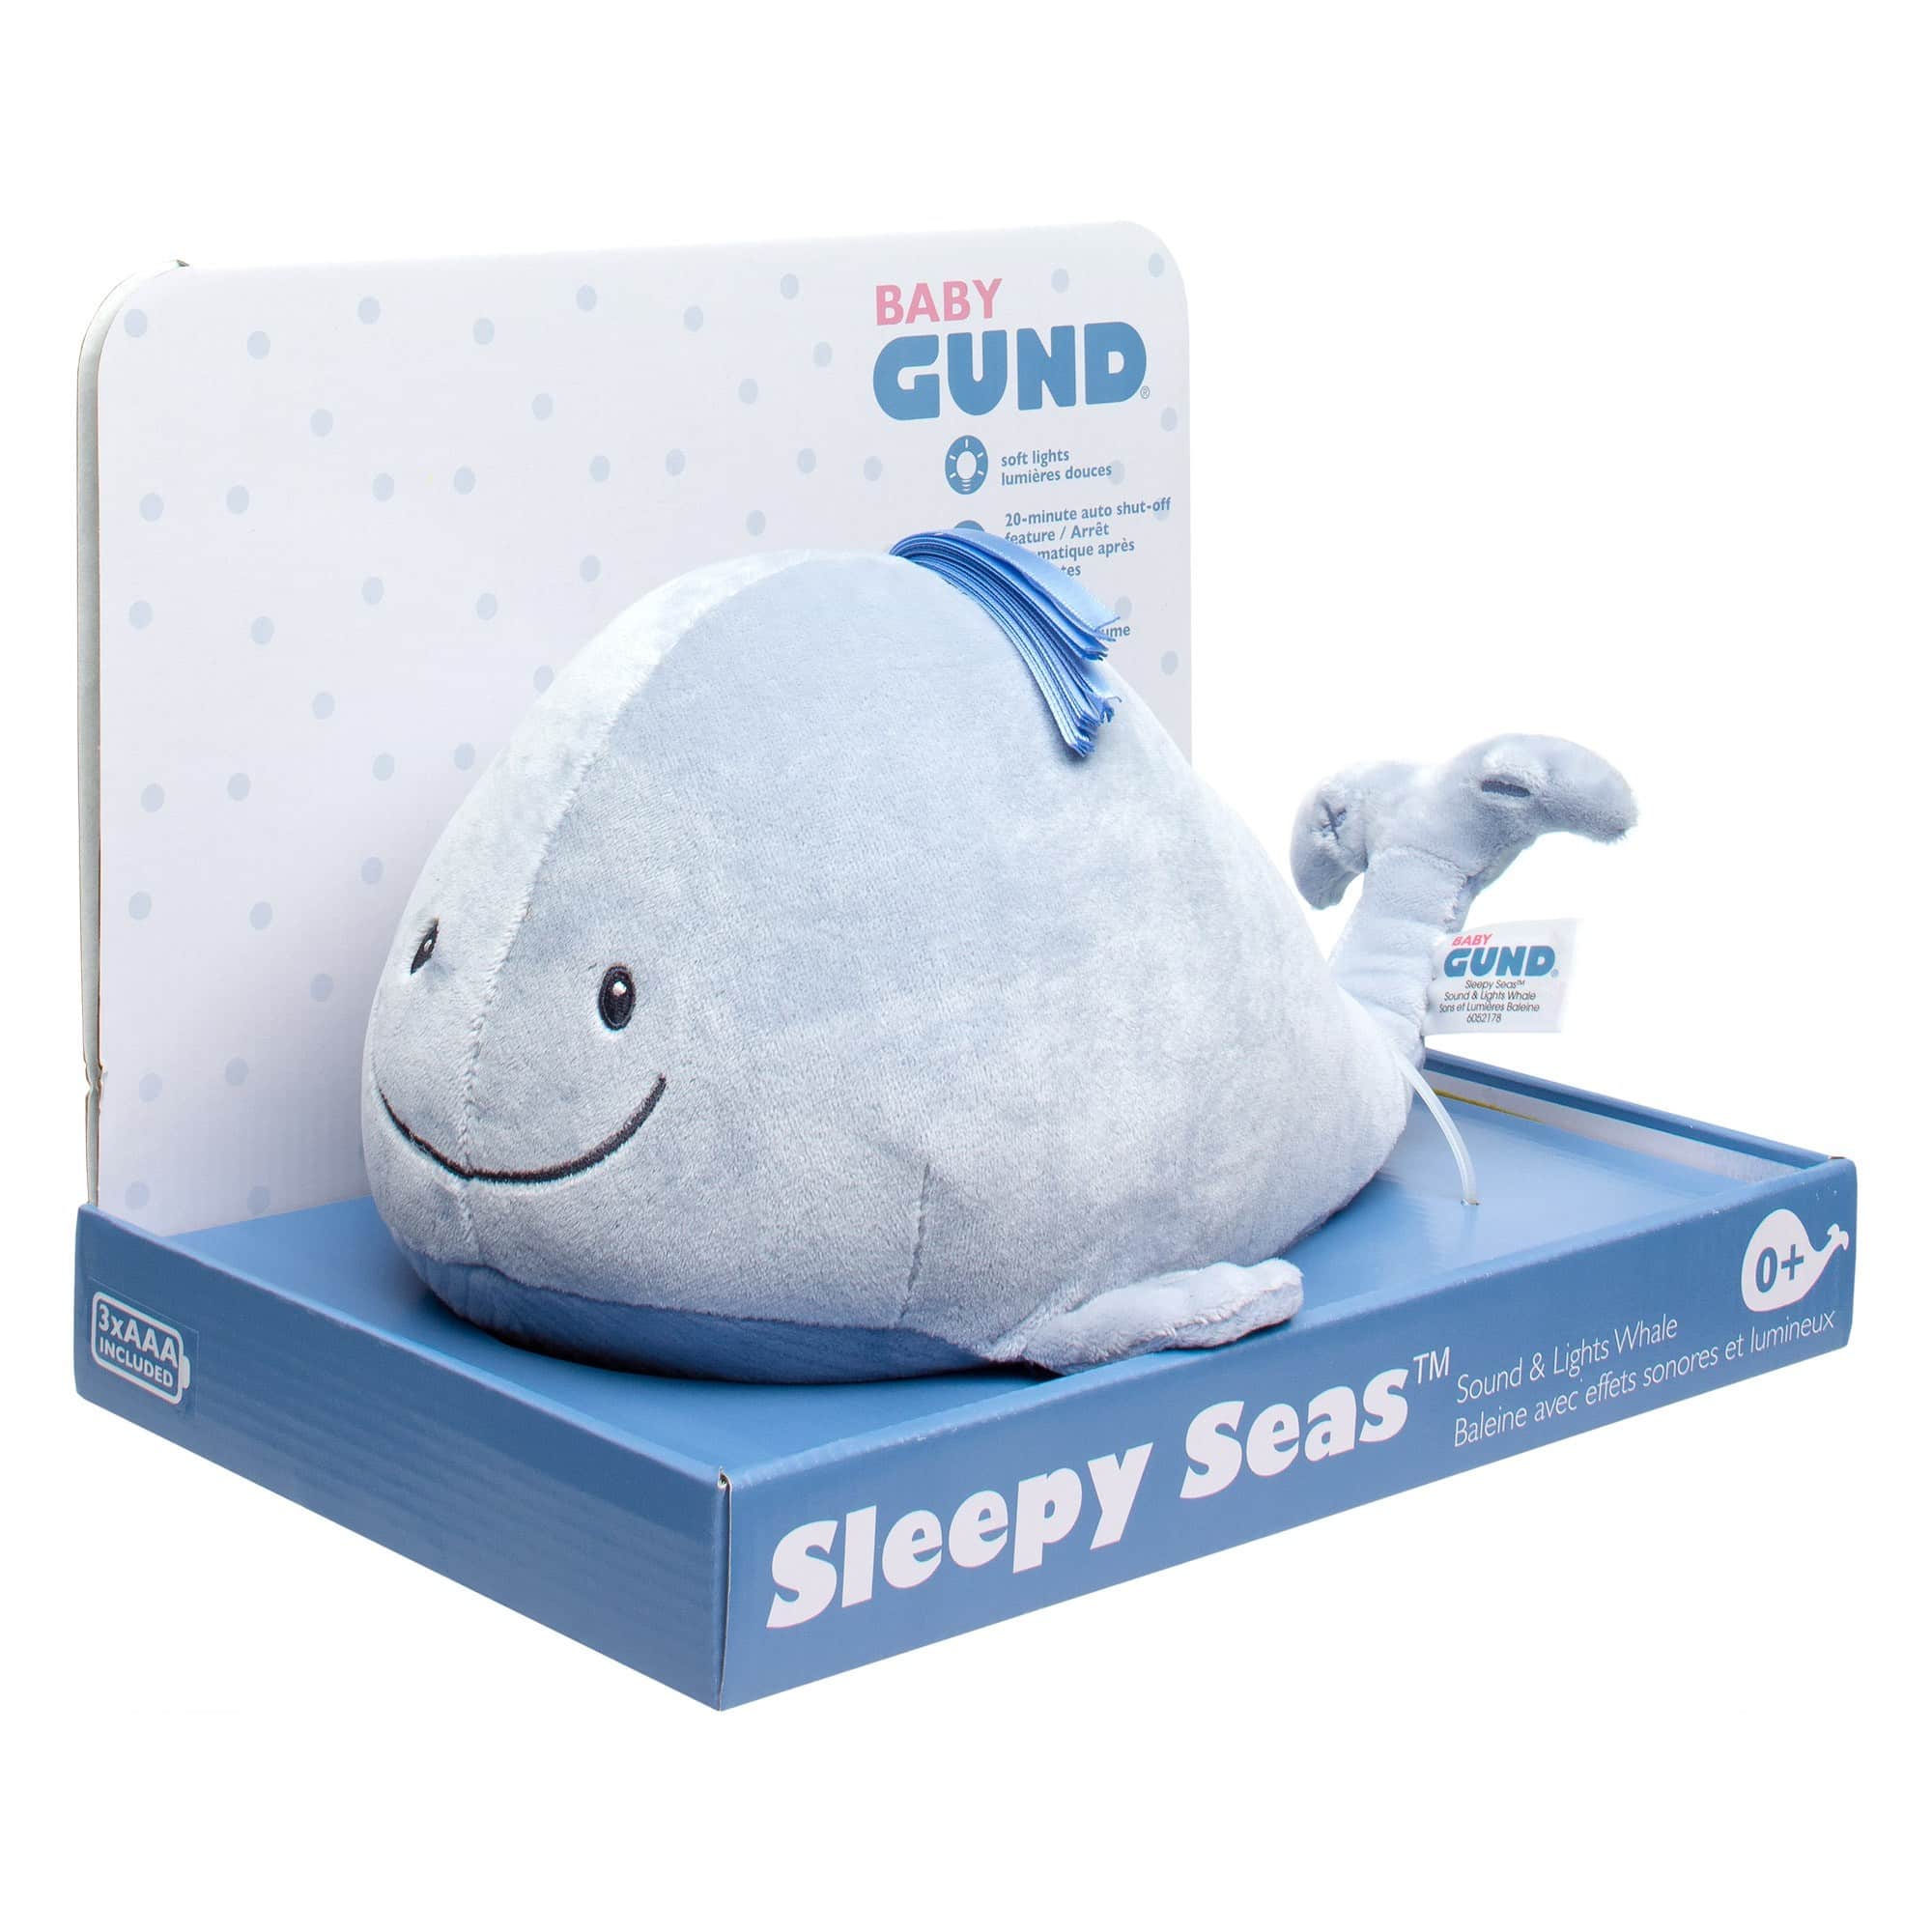 Gund - Sleepy Seas Sound & Lights Whale